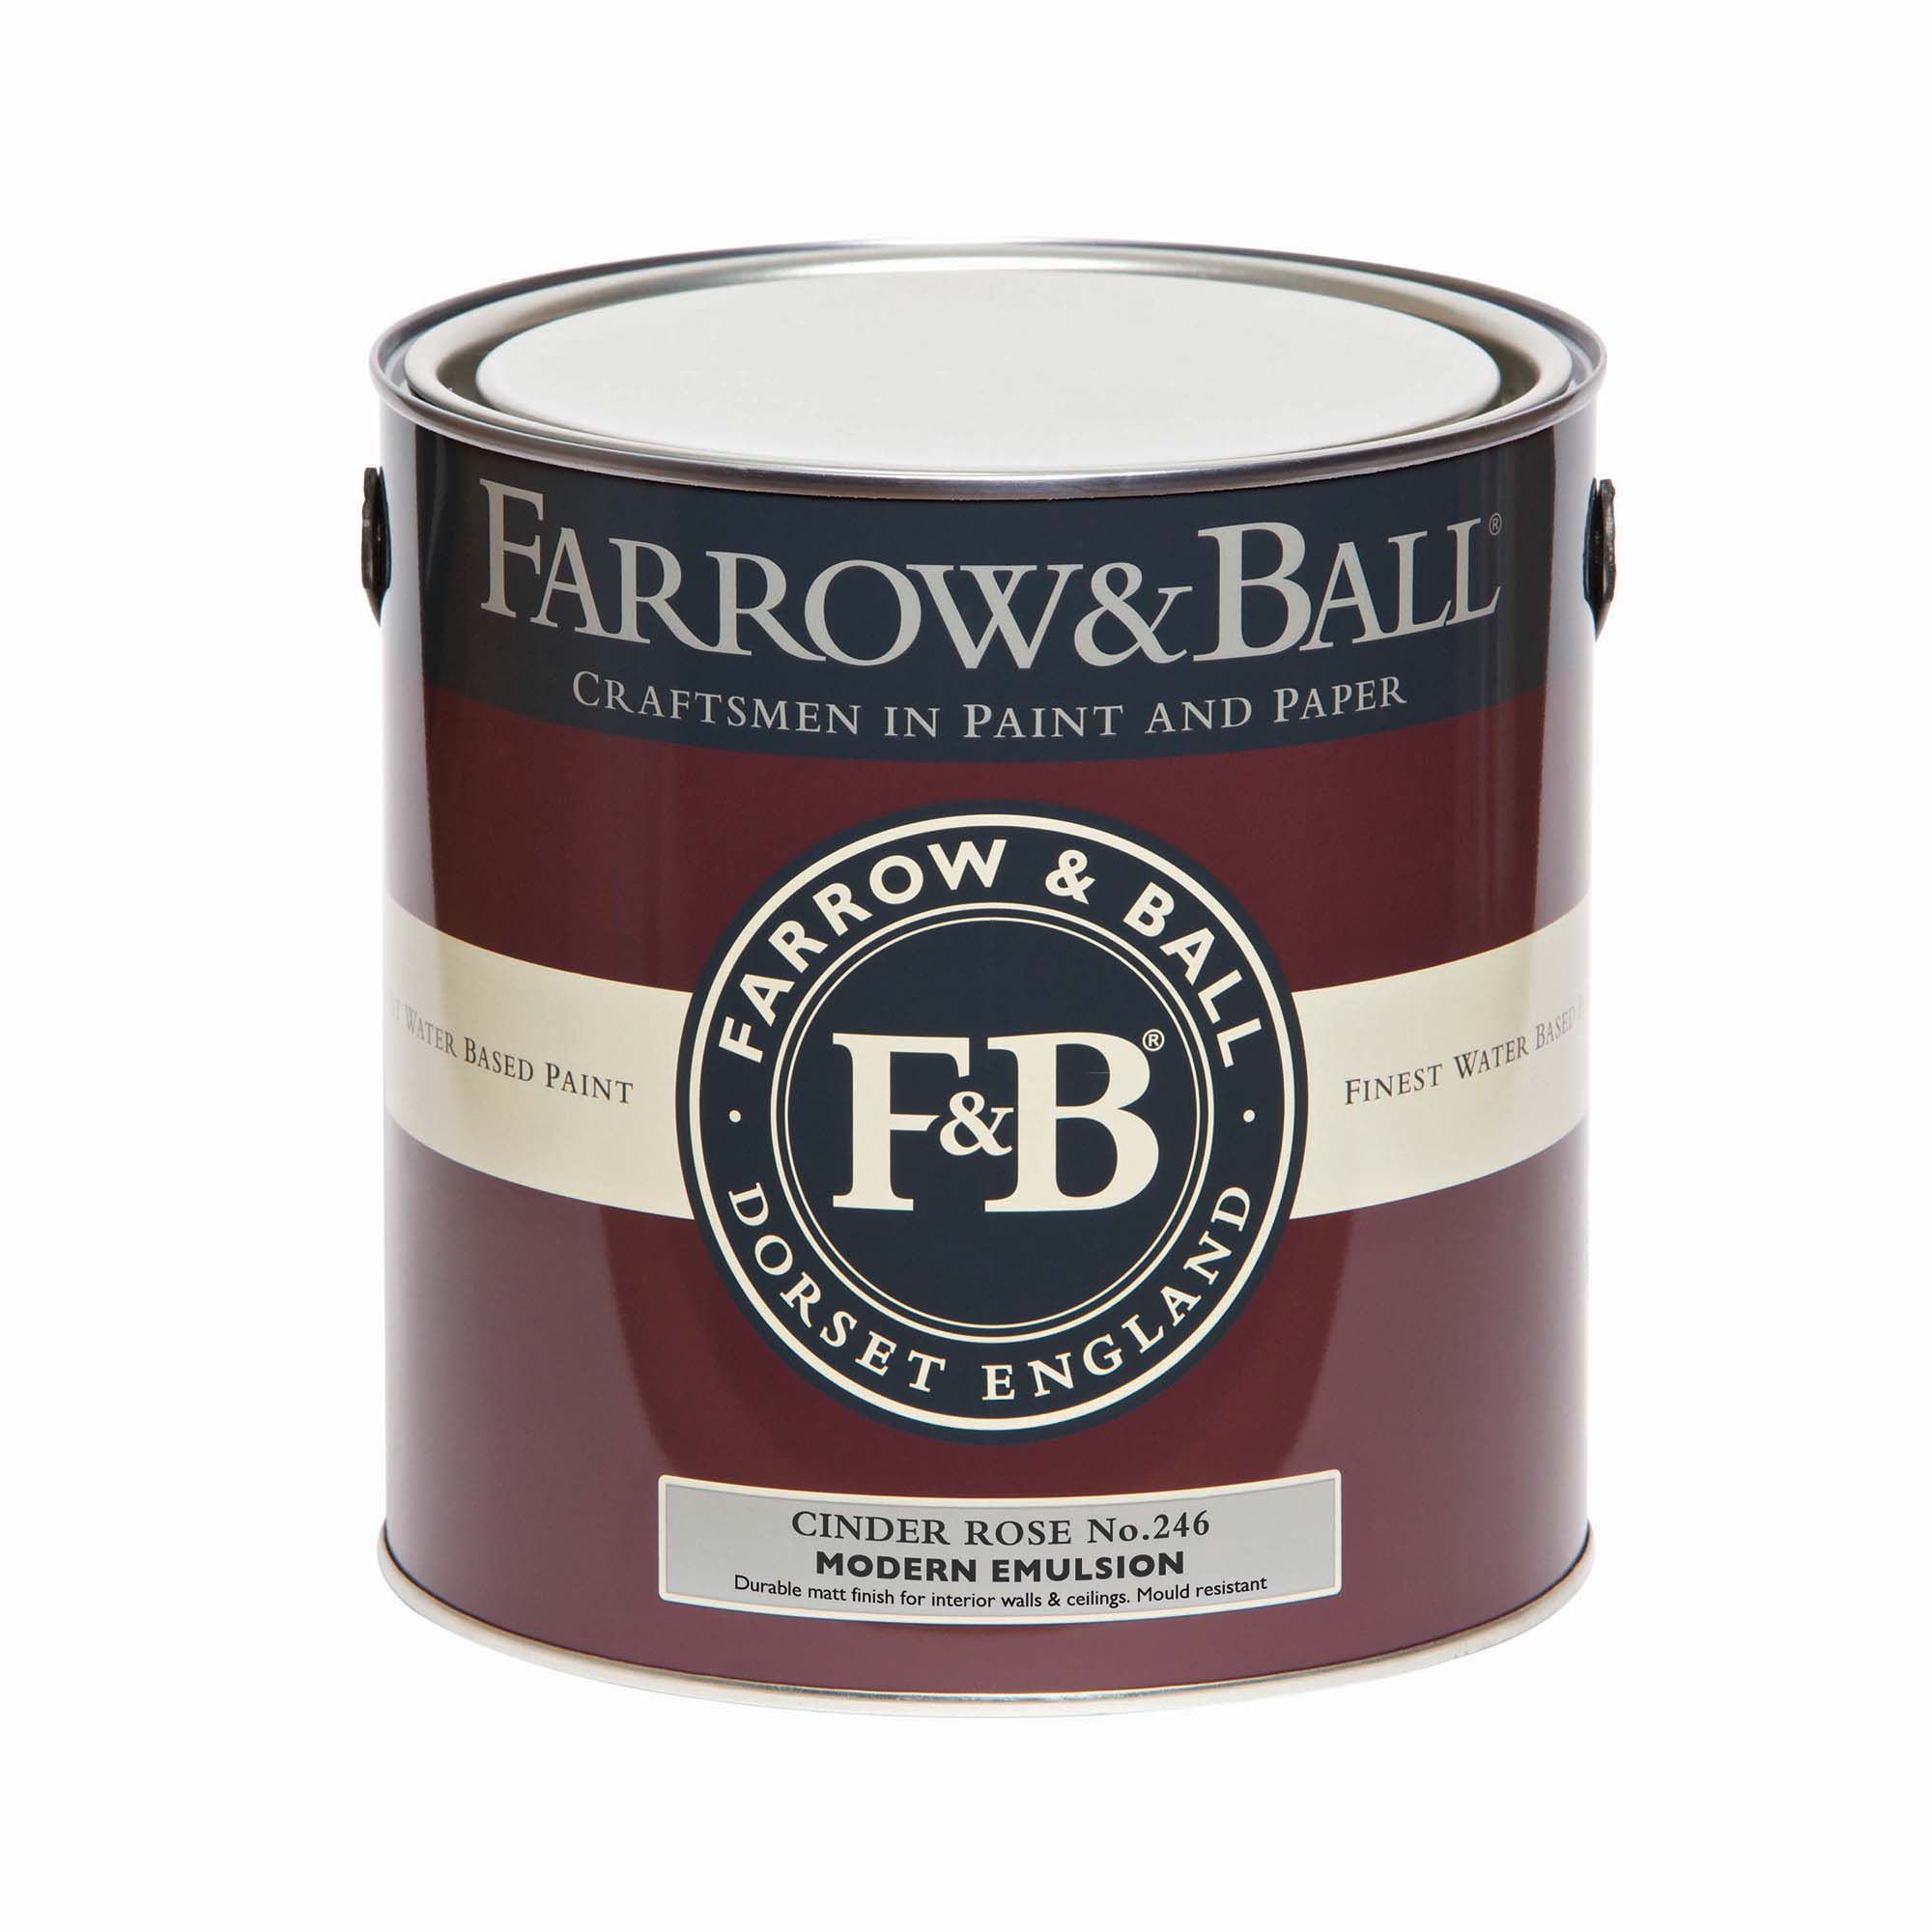 Farrow & Ball Modern Cinder Rose No.246 Matt Emulsion paint, 2.5L